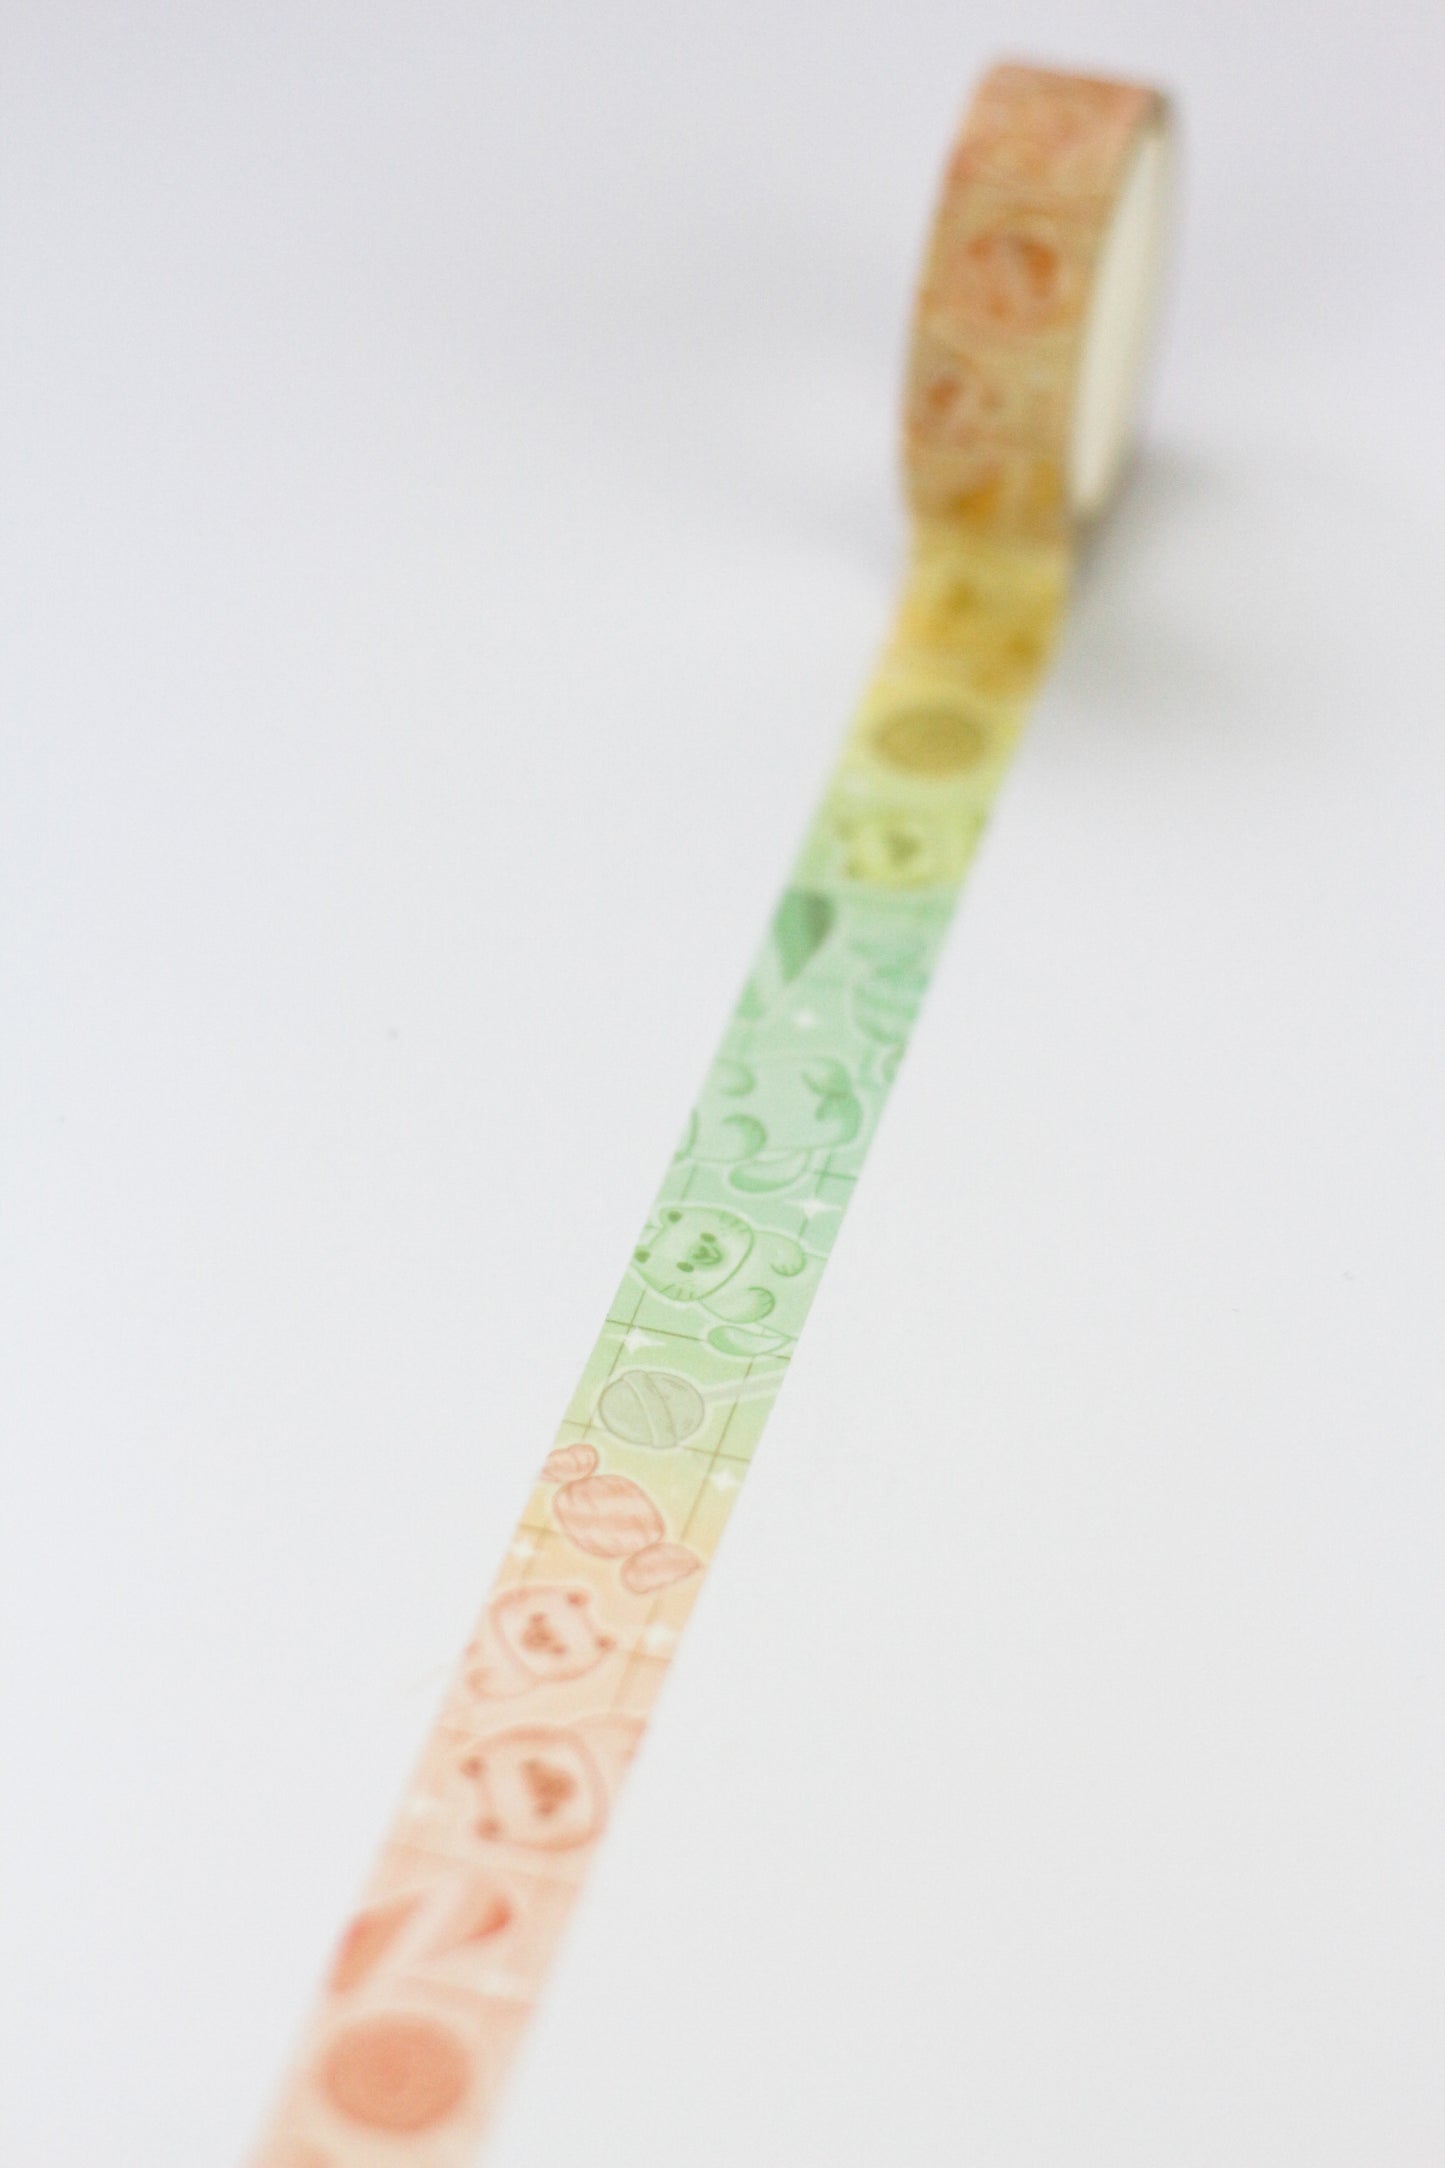 Bonbons Arc-en-Ciel - Washi tape bonbons - Adorable masking tape